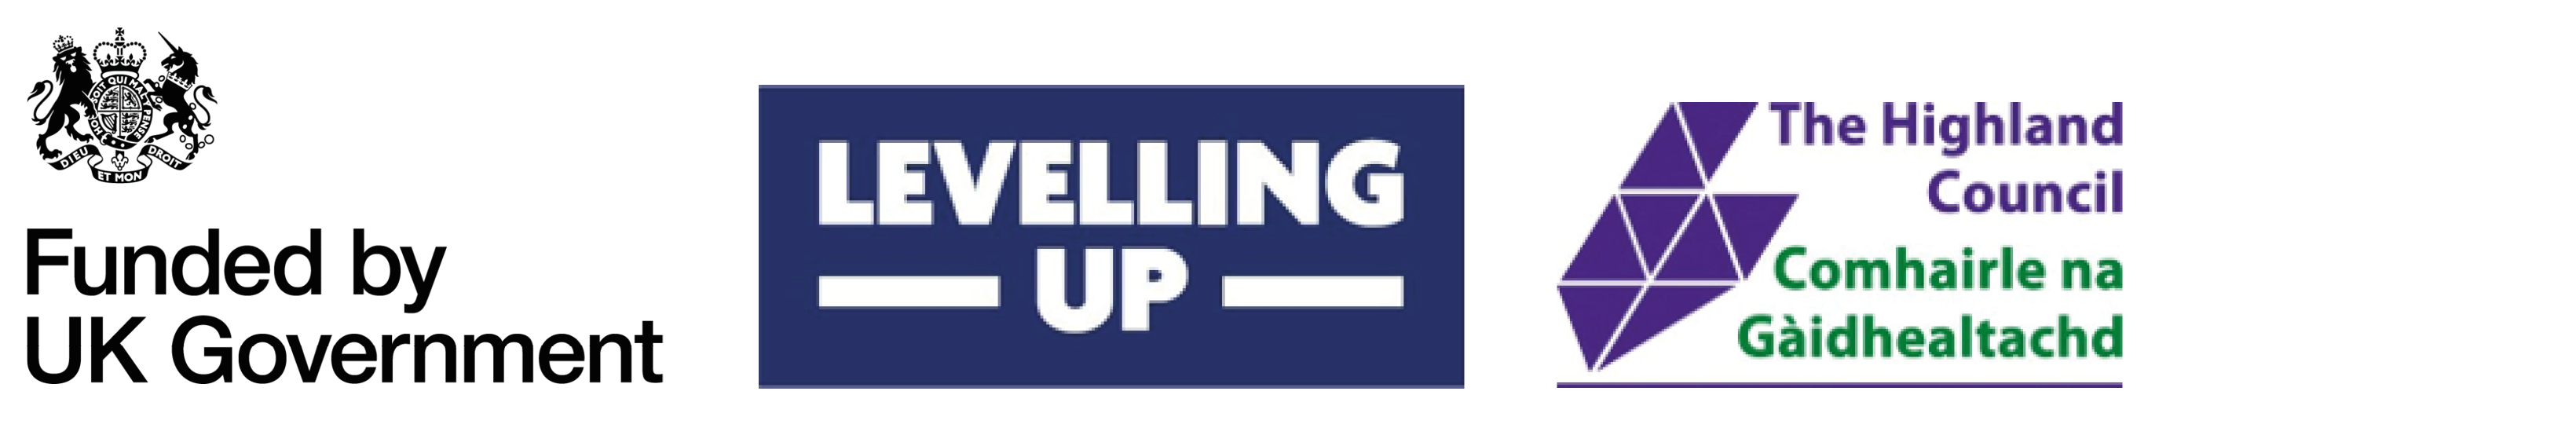 UK Government logo - Levelling up logo - The Highland Council logo